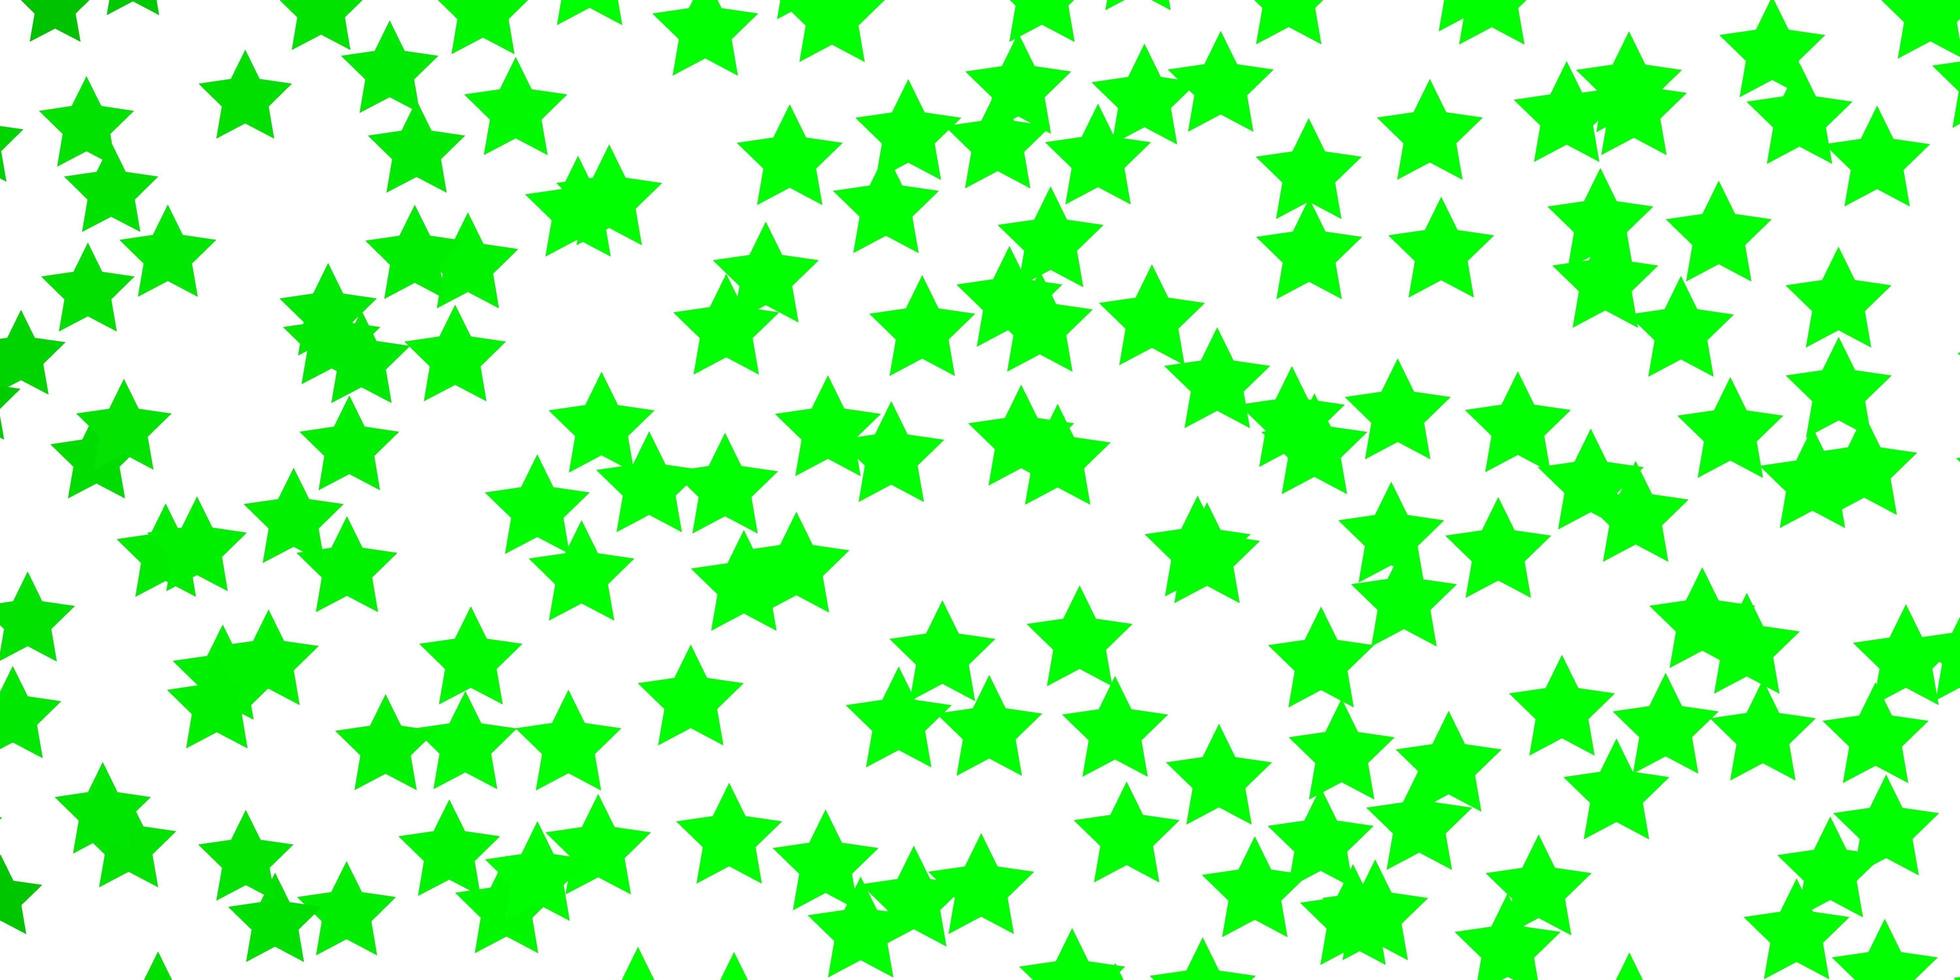 modèle vert clair avec des étoiles au néon. vecteur